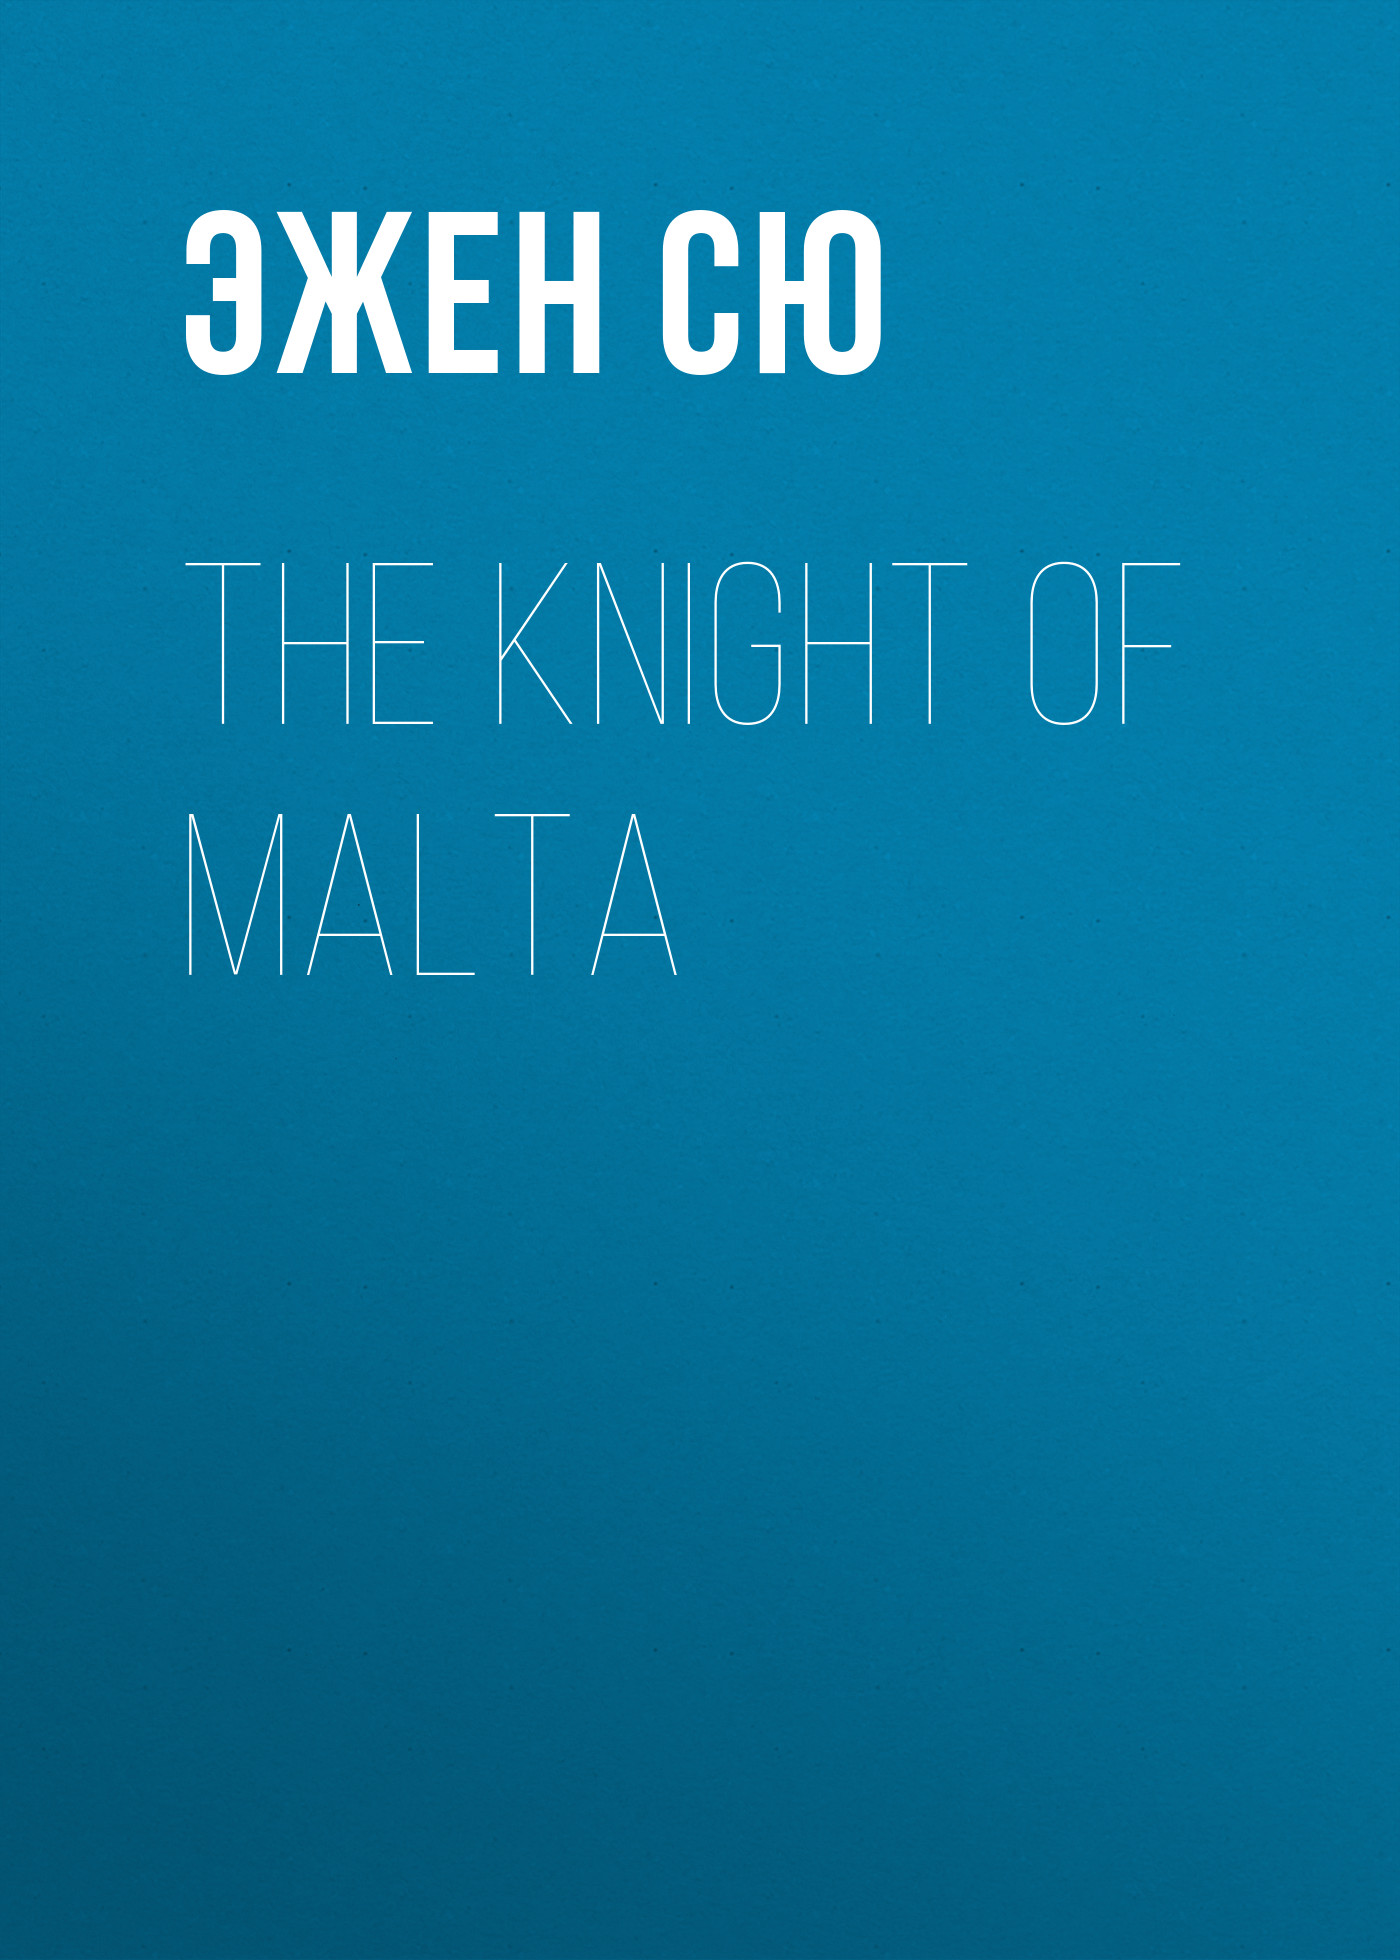 Книга The Knight of Malta из серии , созданная Эжен Сю, может относится к жанру Литература 19 века, Зарубежная старинная литература, Зарубежная классика. Стоимость электронной книги The Knight of Malta с идентификатором 25475663 составляет 0 руб.